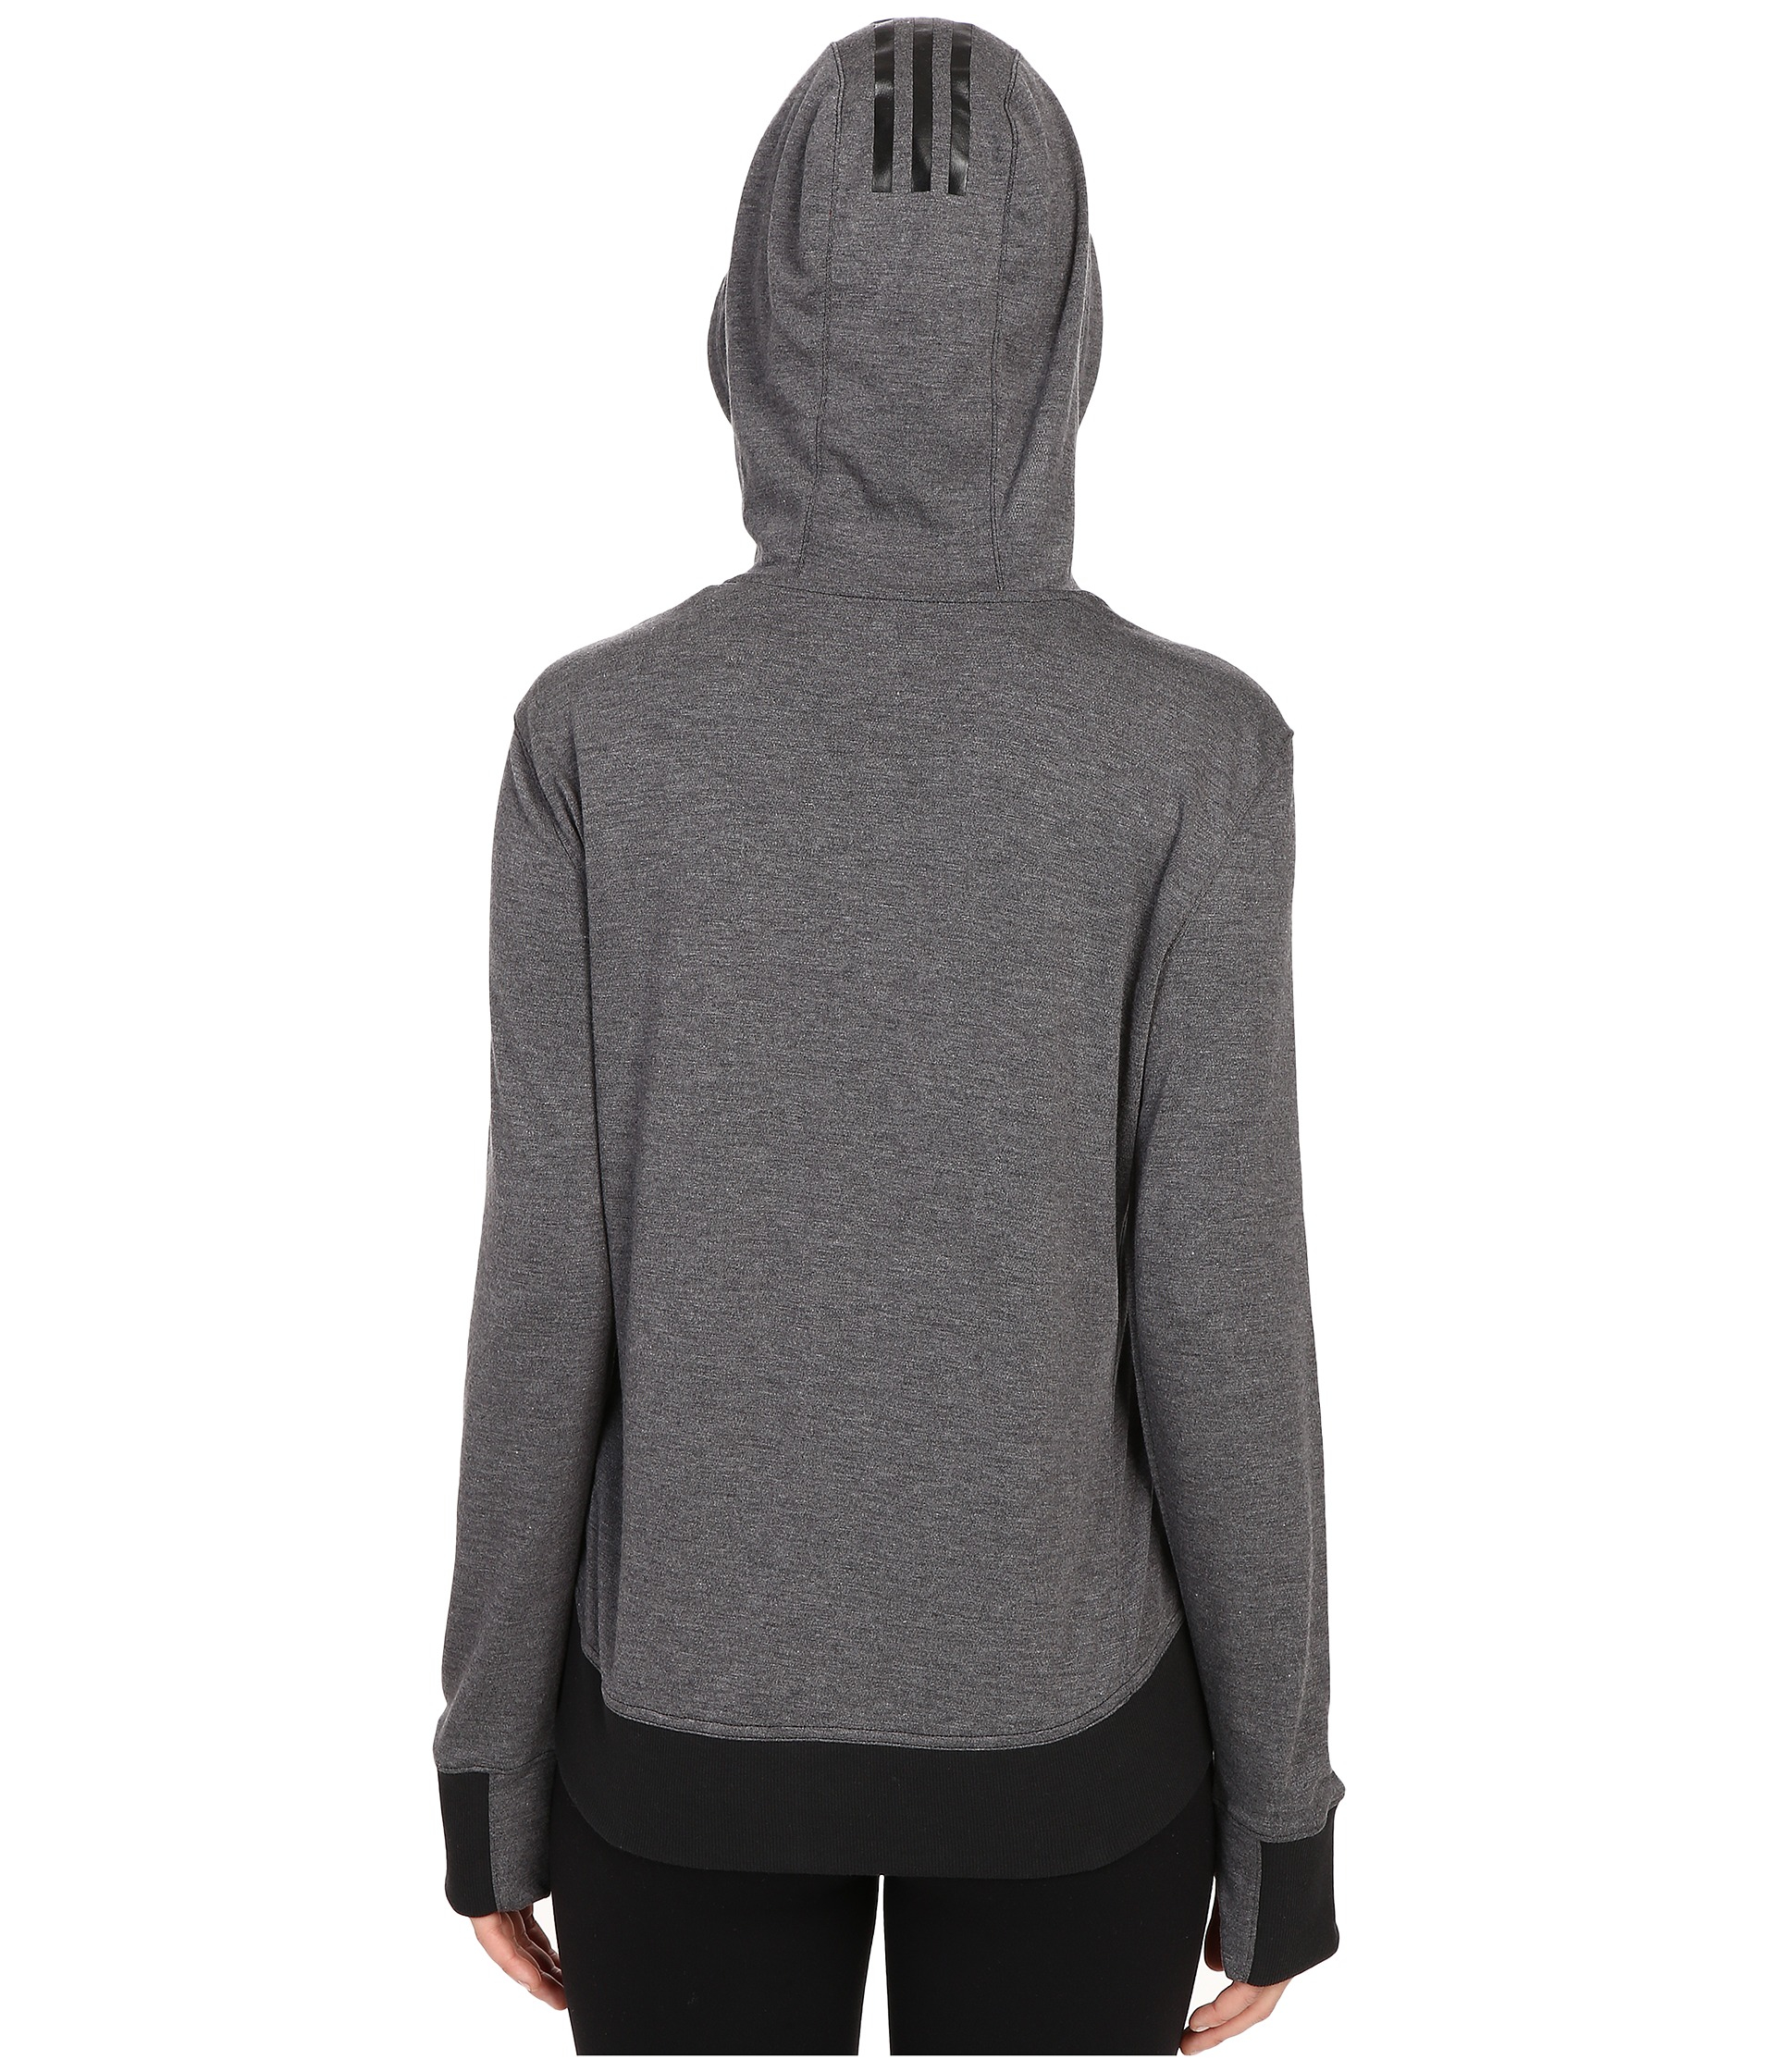 grey pullover hoodie